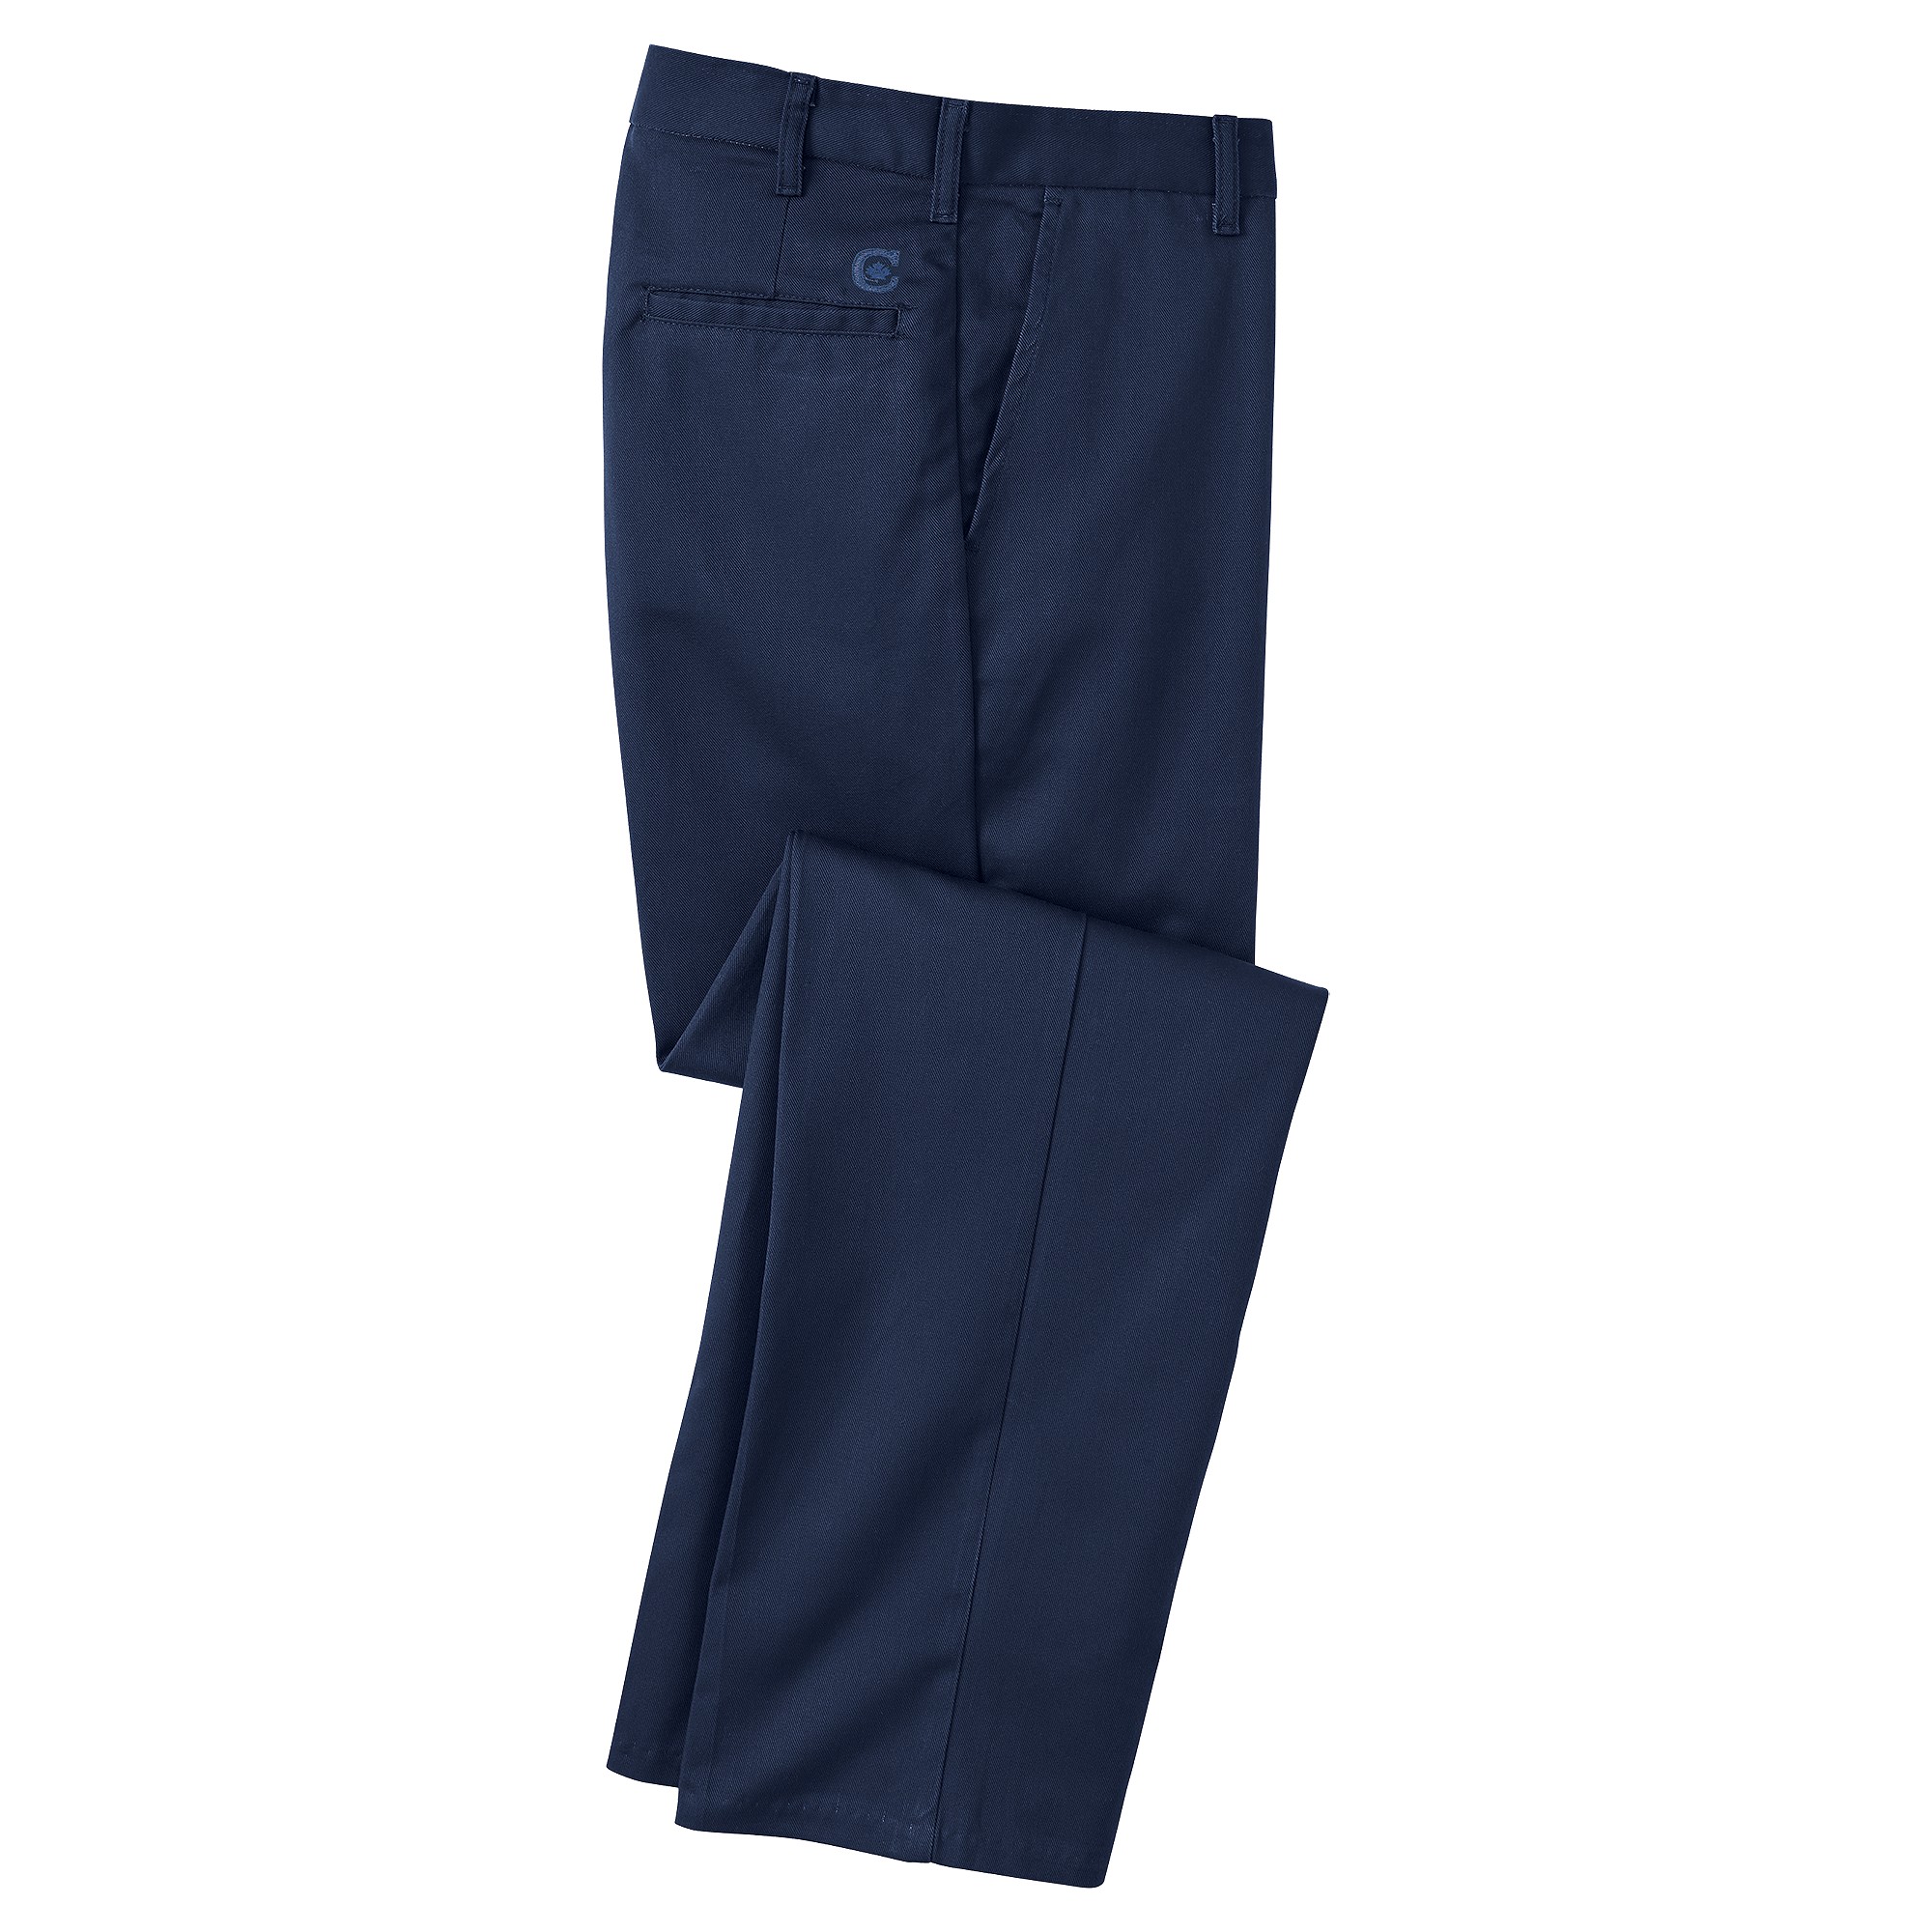 Reliance  Canadian Linen 100% Cotton Flat Front Pant